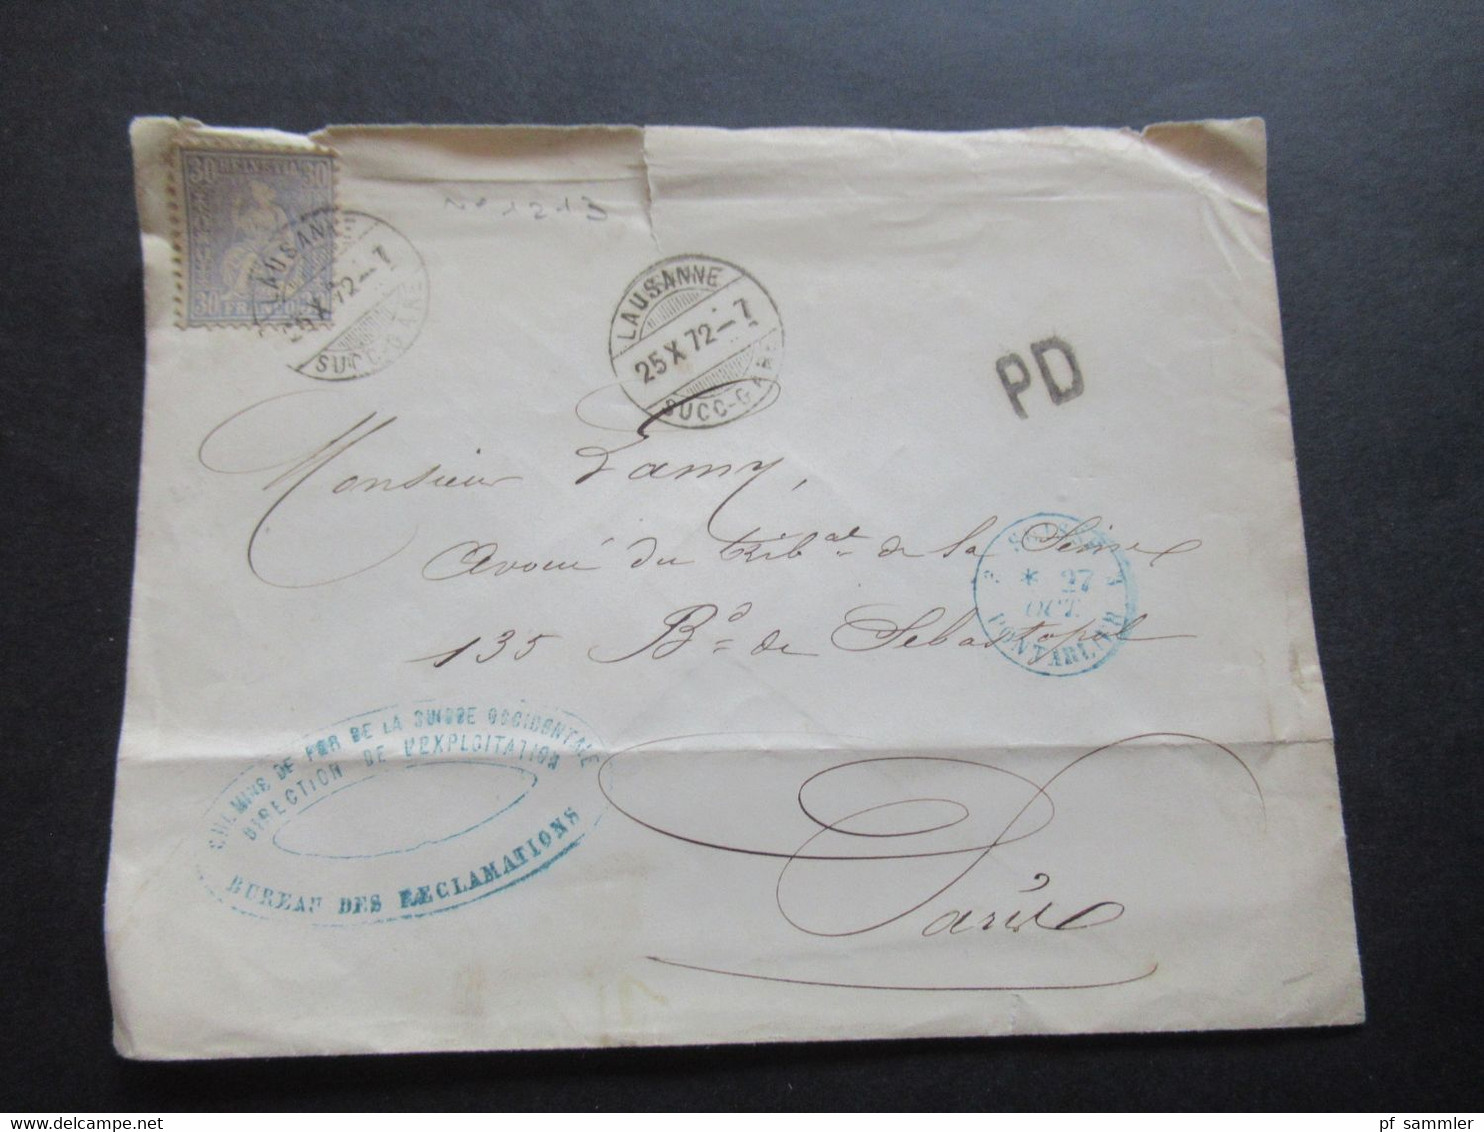 Schweiz 1872 Sitzende Helvetia Nr.33 EF PD Brief Lausanne - Paris Stp. Chemins De Fer De La Suisse Occidentale - Briefe U. Dokumente